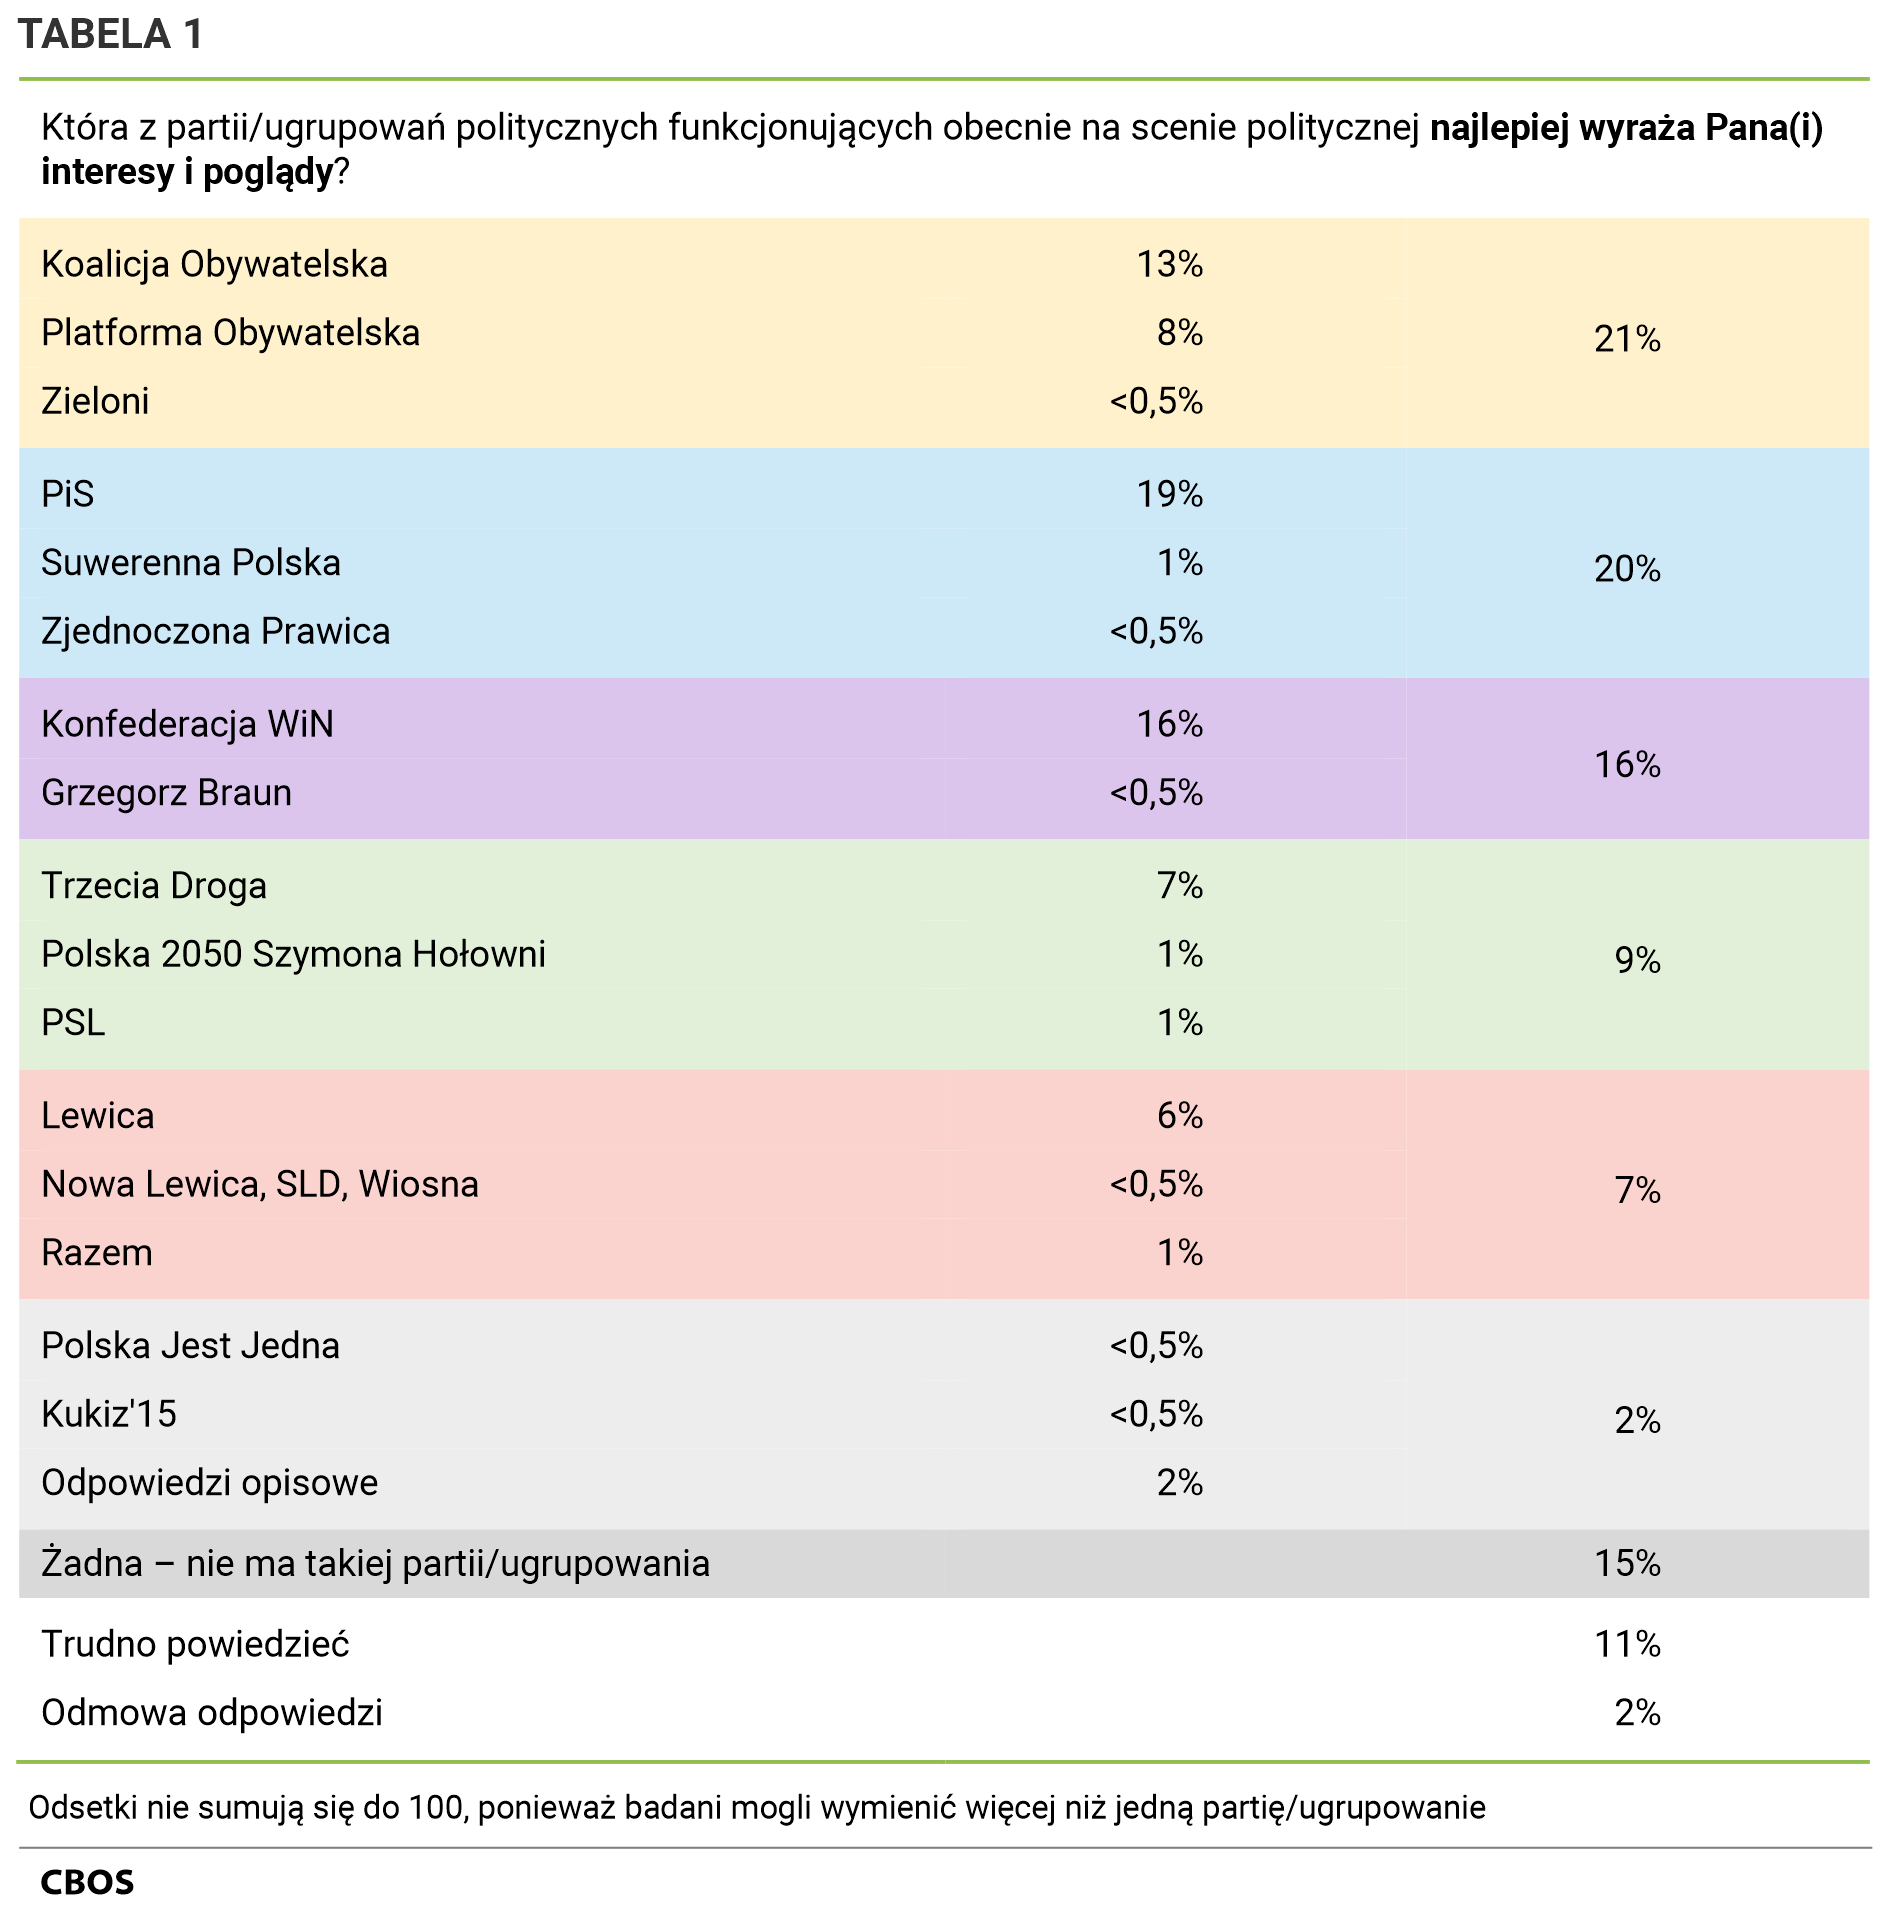 Tabela 1. Która z partii/ugrupowań politycznych funkcjonujących obecnie na scenie politycznej najlepiej wyraża Pana(i) interesy i poglądy? Koalicja Obywatelska  - 13%, Platforma Obywatelska - 8%, Zieloni - poniżej 0,5%, łącznie trzy powyższe - 21%, PiS - 19%, Suwerenna Polska - 1%, Zjednoczona Prawica - poniżej 0,5%, łącznie trzy powyższe - 20%, Konfederacja WiN  - 16%, Grzegorz Braun - poniżej 0,5%, łącznie trzy powyższe - 16%, Trzecia Droga  - 7%, Polska 2050 Szymona Hołowni - 1%, PSL - 1%, łącznie trzy powyższe - 9%, Lewica  - 6%, Nowa Lewica, SLD, Wiosna - poniżej 0,5%, Razem - 1%, łącznie trzy powyższe - 7%, Polska Jest Jedna - poniżej 0,5%, Kukiz’15 - poniżej 0,5%, Odpowiedzi opisowe - 2%, łącznie powyższe - 2%, Żadna – nie ma takiej partii/ugrupowania - 15%, Trudno powiedzieć - 11%, Odmowa odpowiedzi - 2%. Odsetki nie sumują się do 100, ponieważ badani mogli wymienić więcej niż jedną partię/ugrupowanie